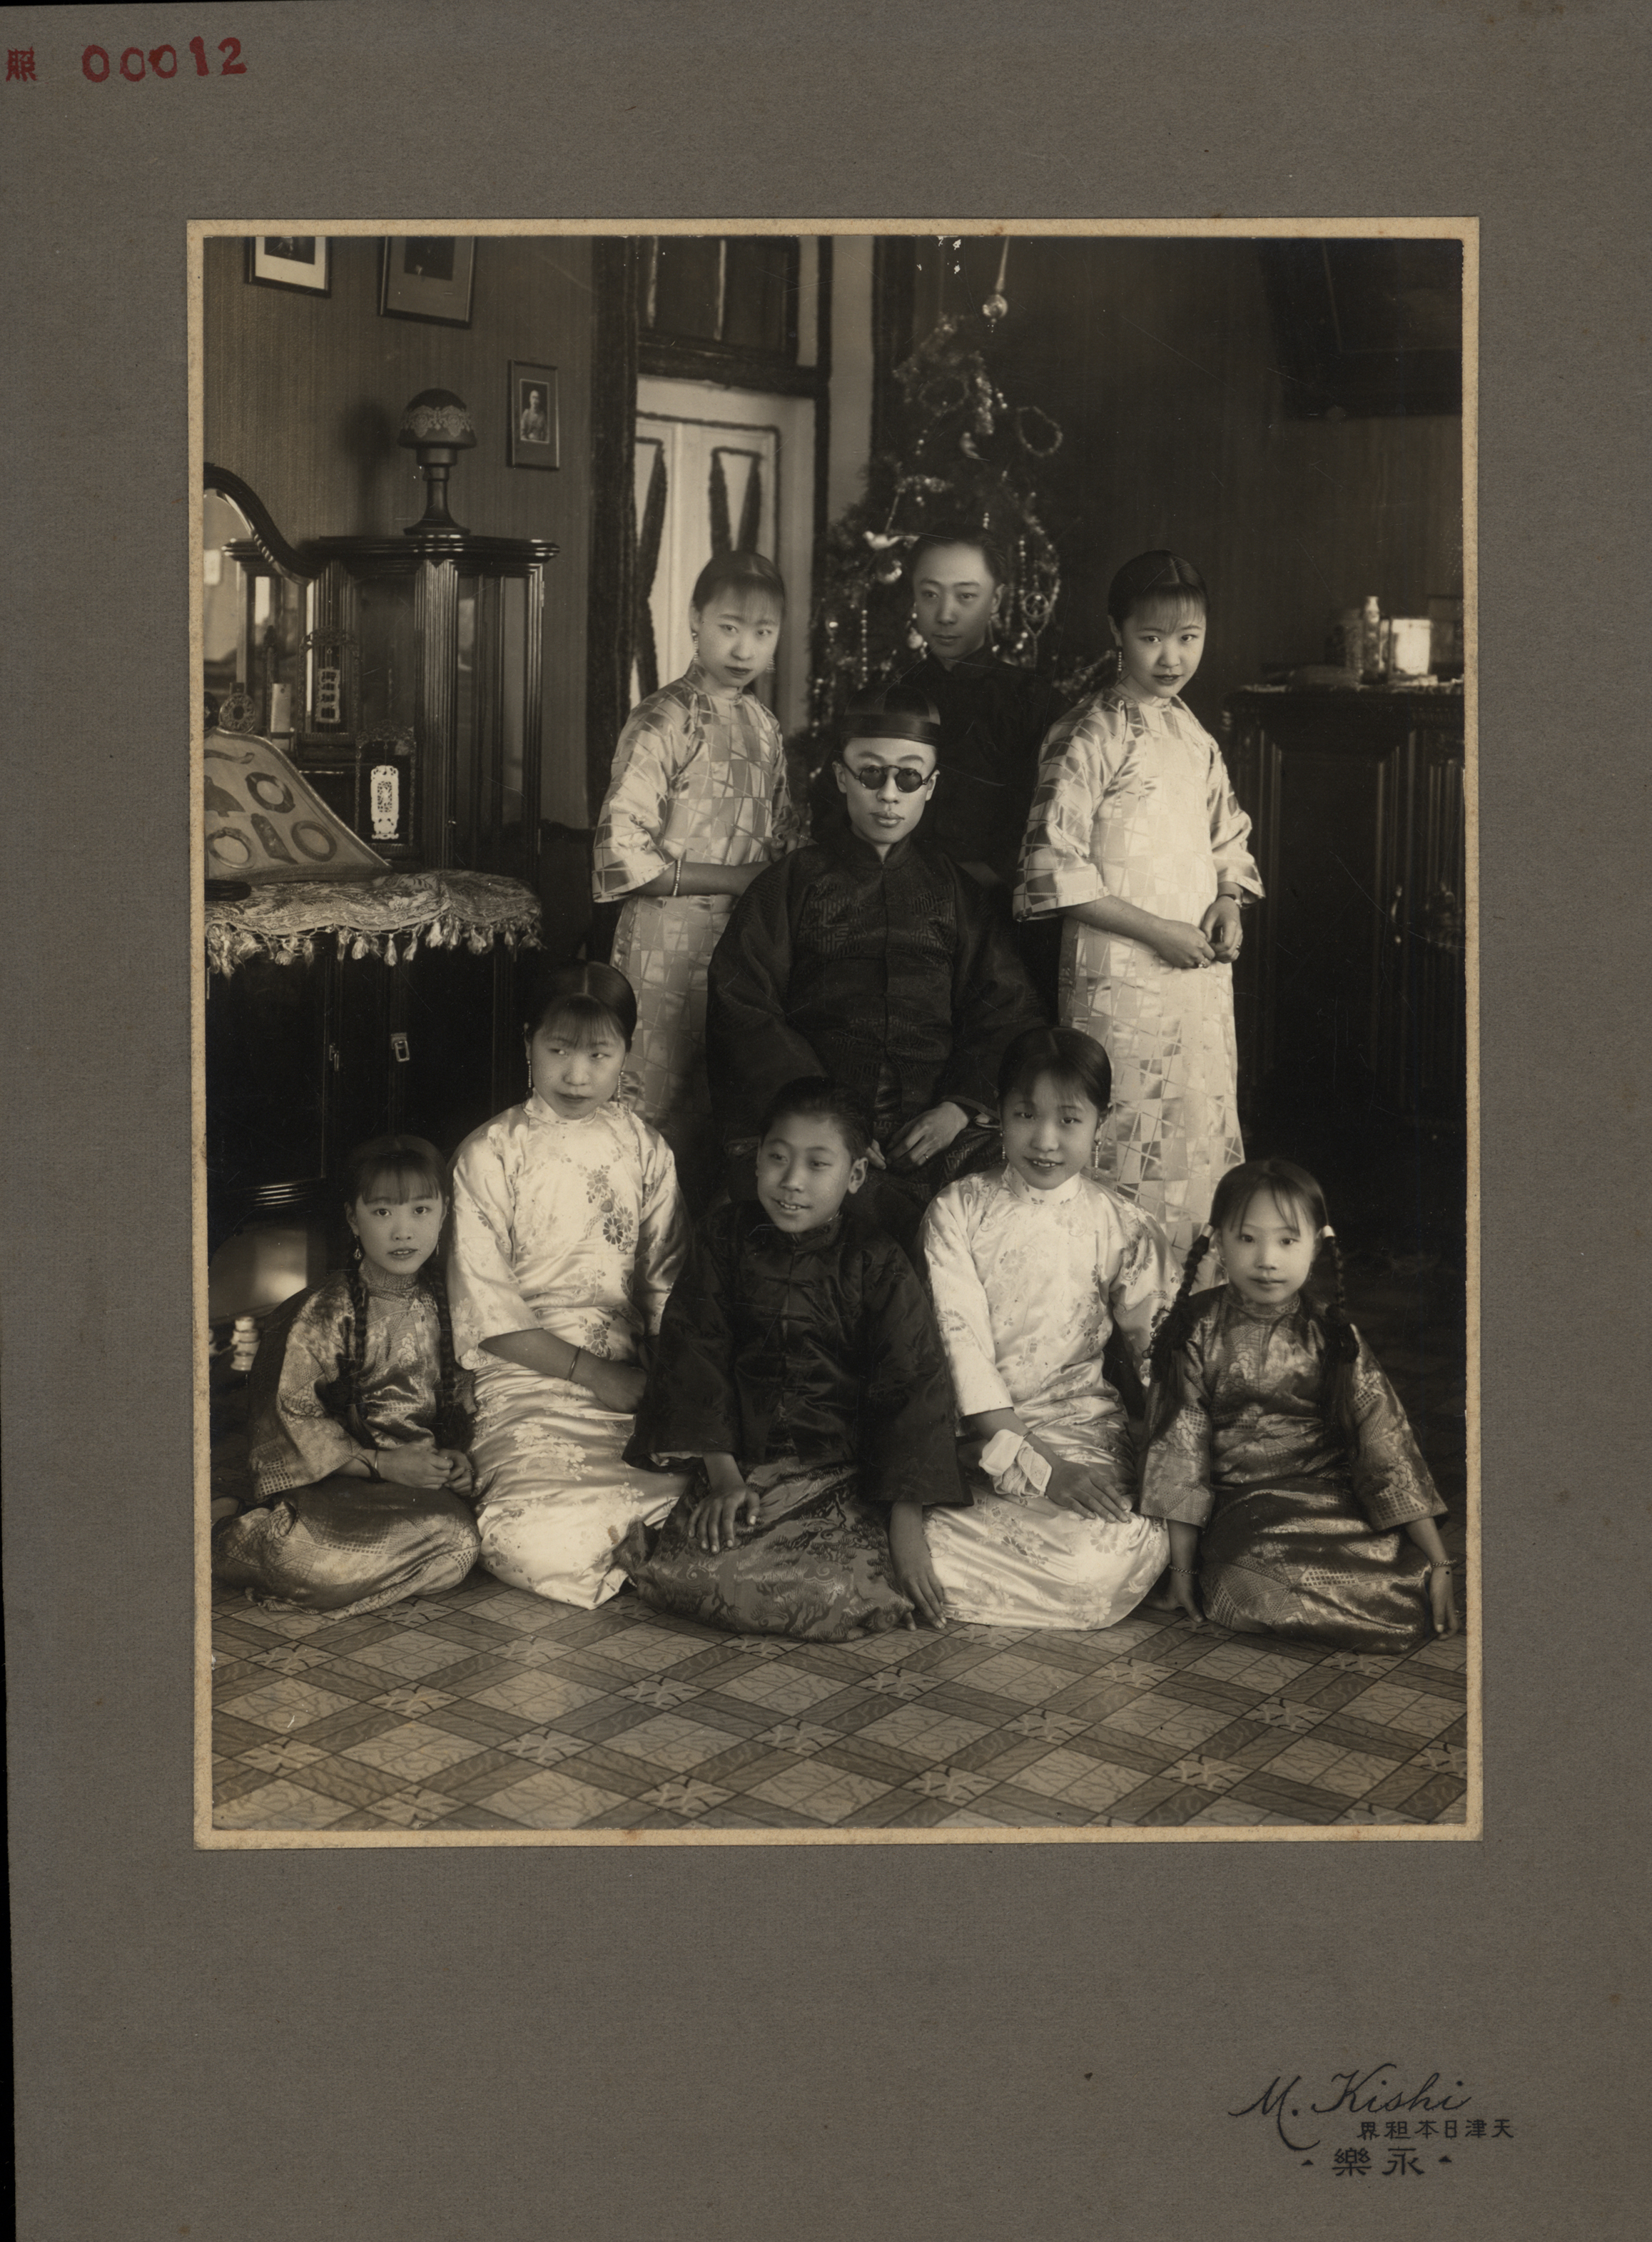 サングラス姿の溥儀及び兄弟姉妹八人の家族写真